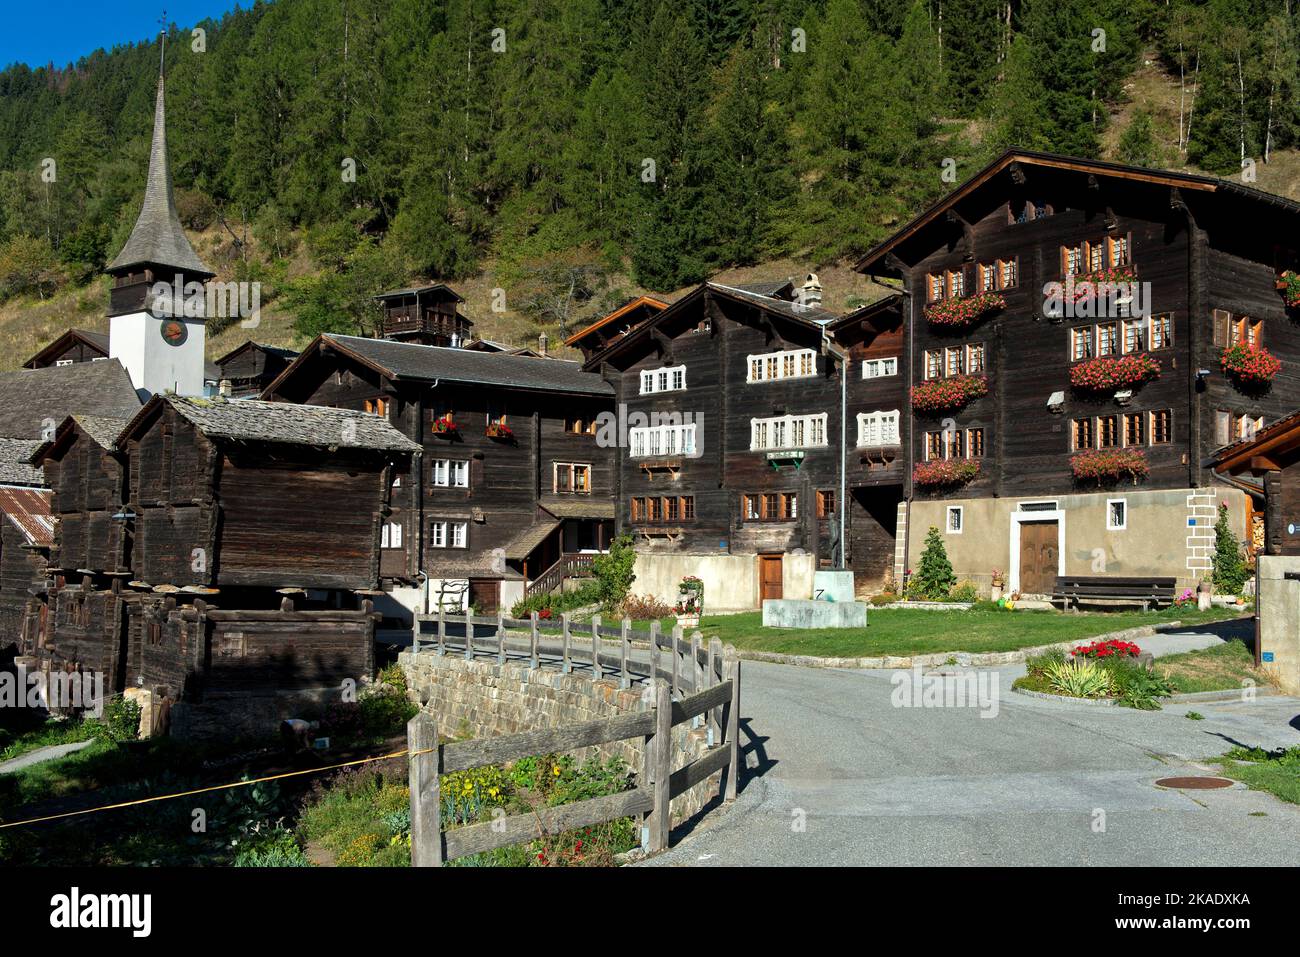 Place du village de la commune du Valais Niederwald, lieu de naissance de César Ritz, pionnier de l'industrie hôtelière de luxe, Niederwald, Valais, Suisse Banque D'Images